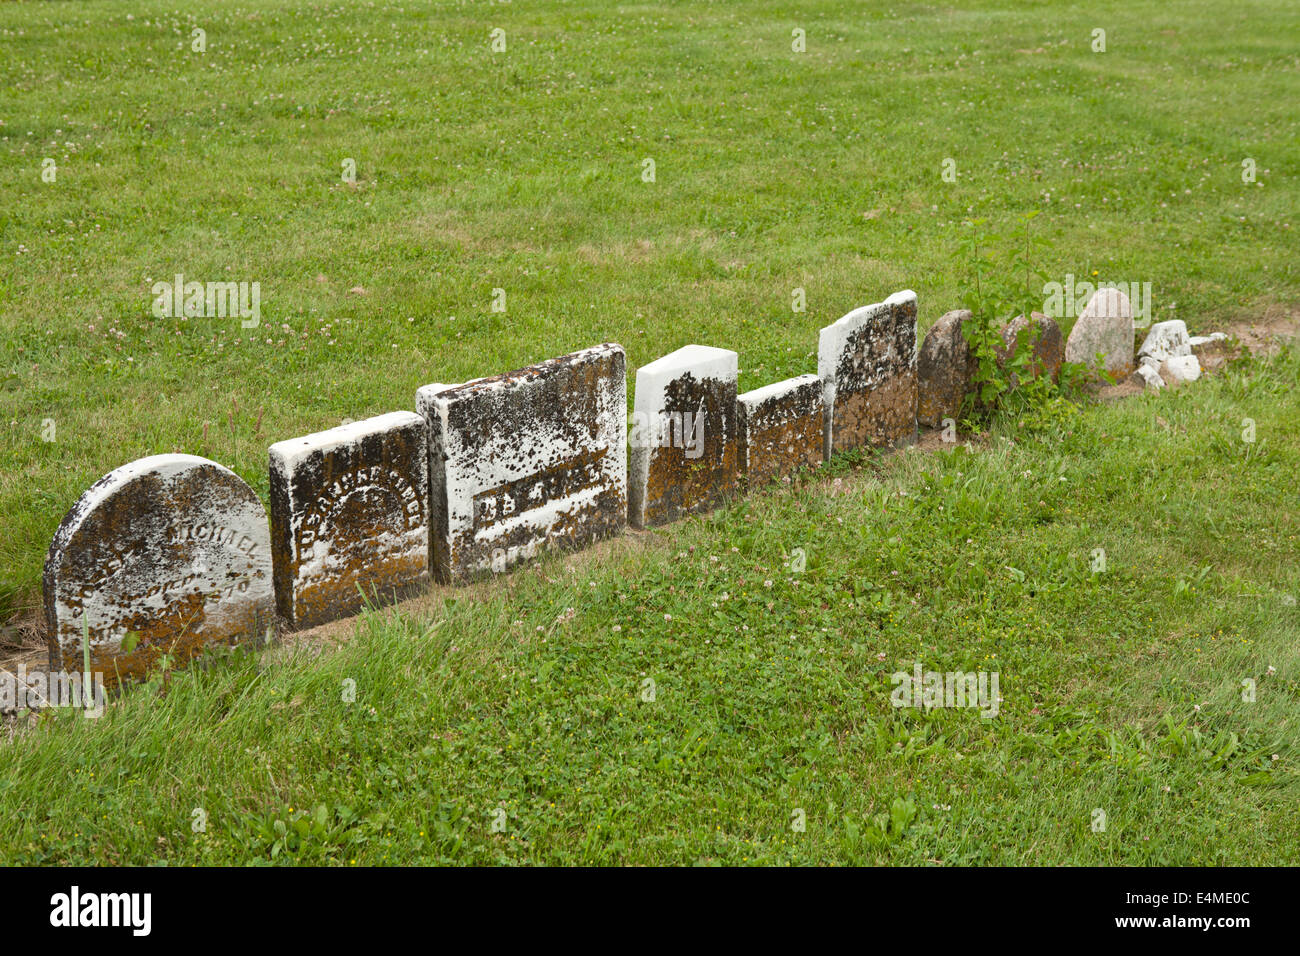 Linie der Grabsteine auf einem Friedhof, Gather memorialize die Menschen, die dort begraben wurden. Stockfoto